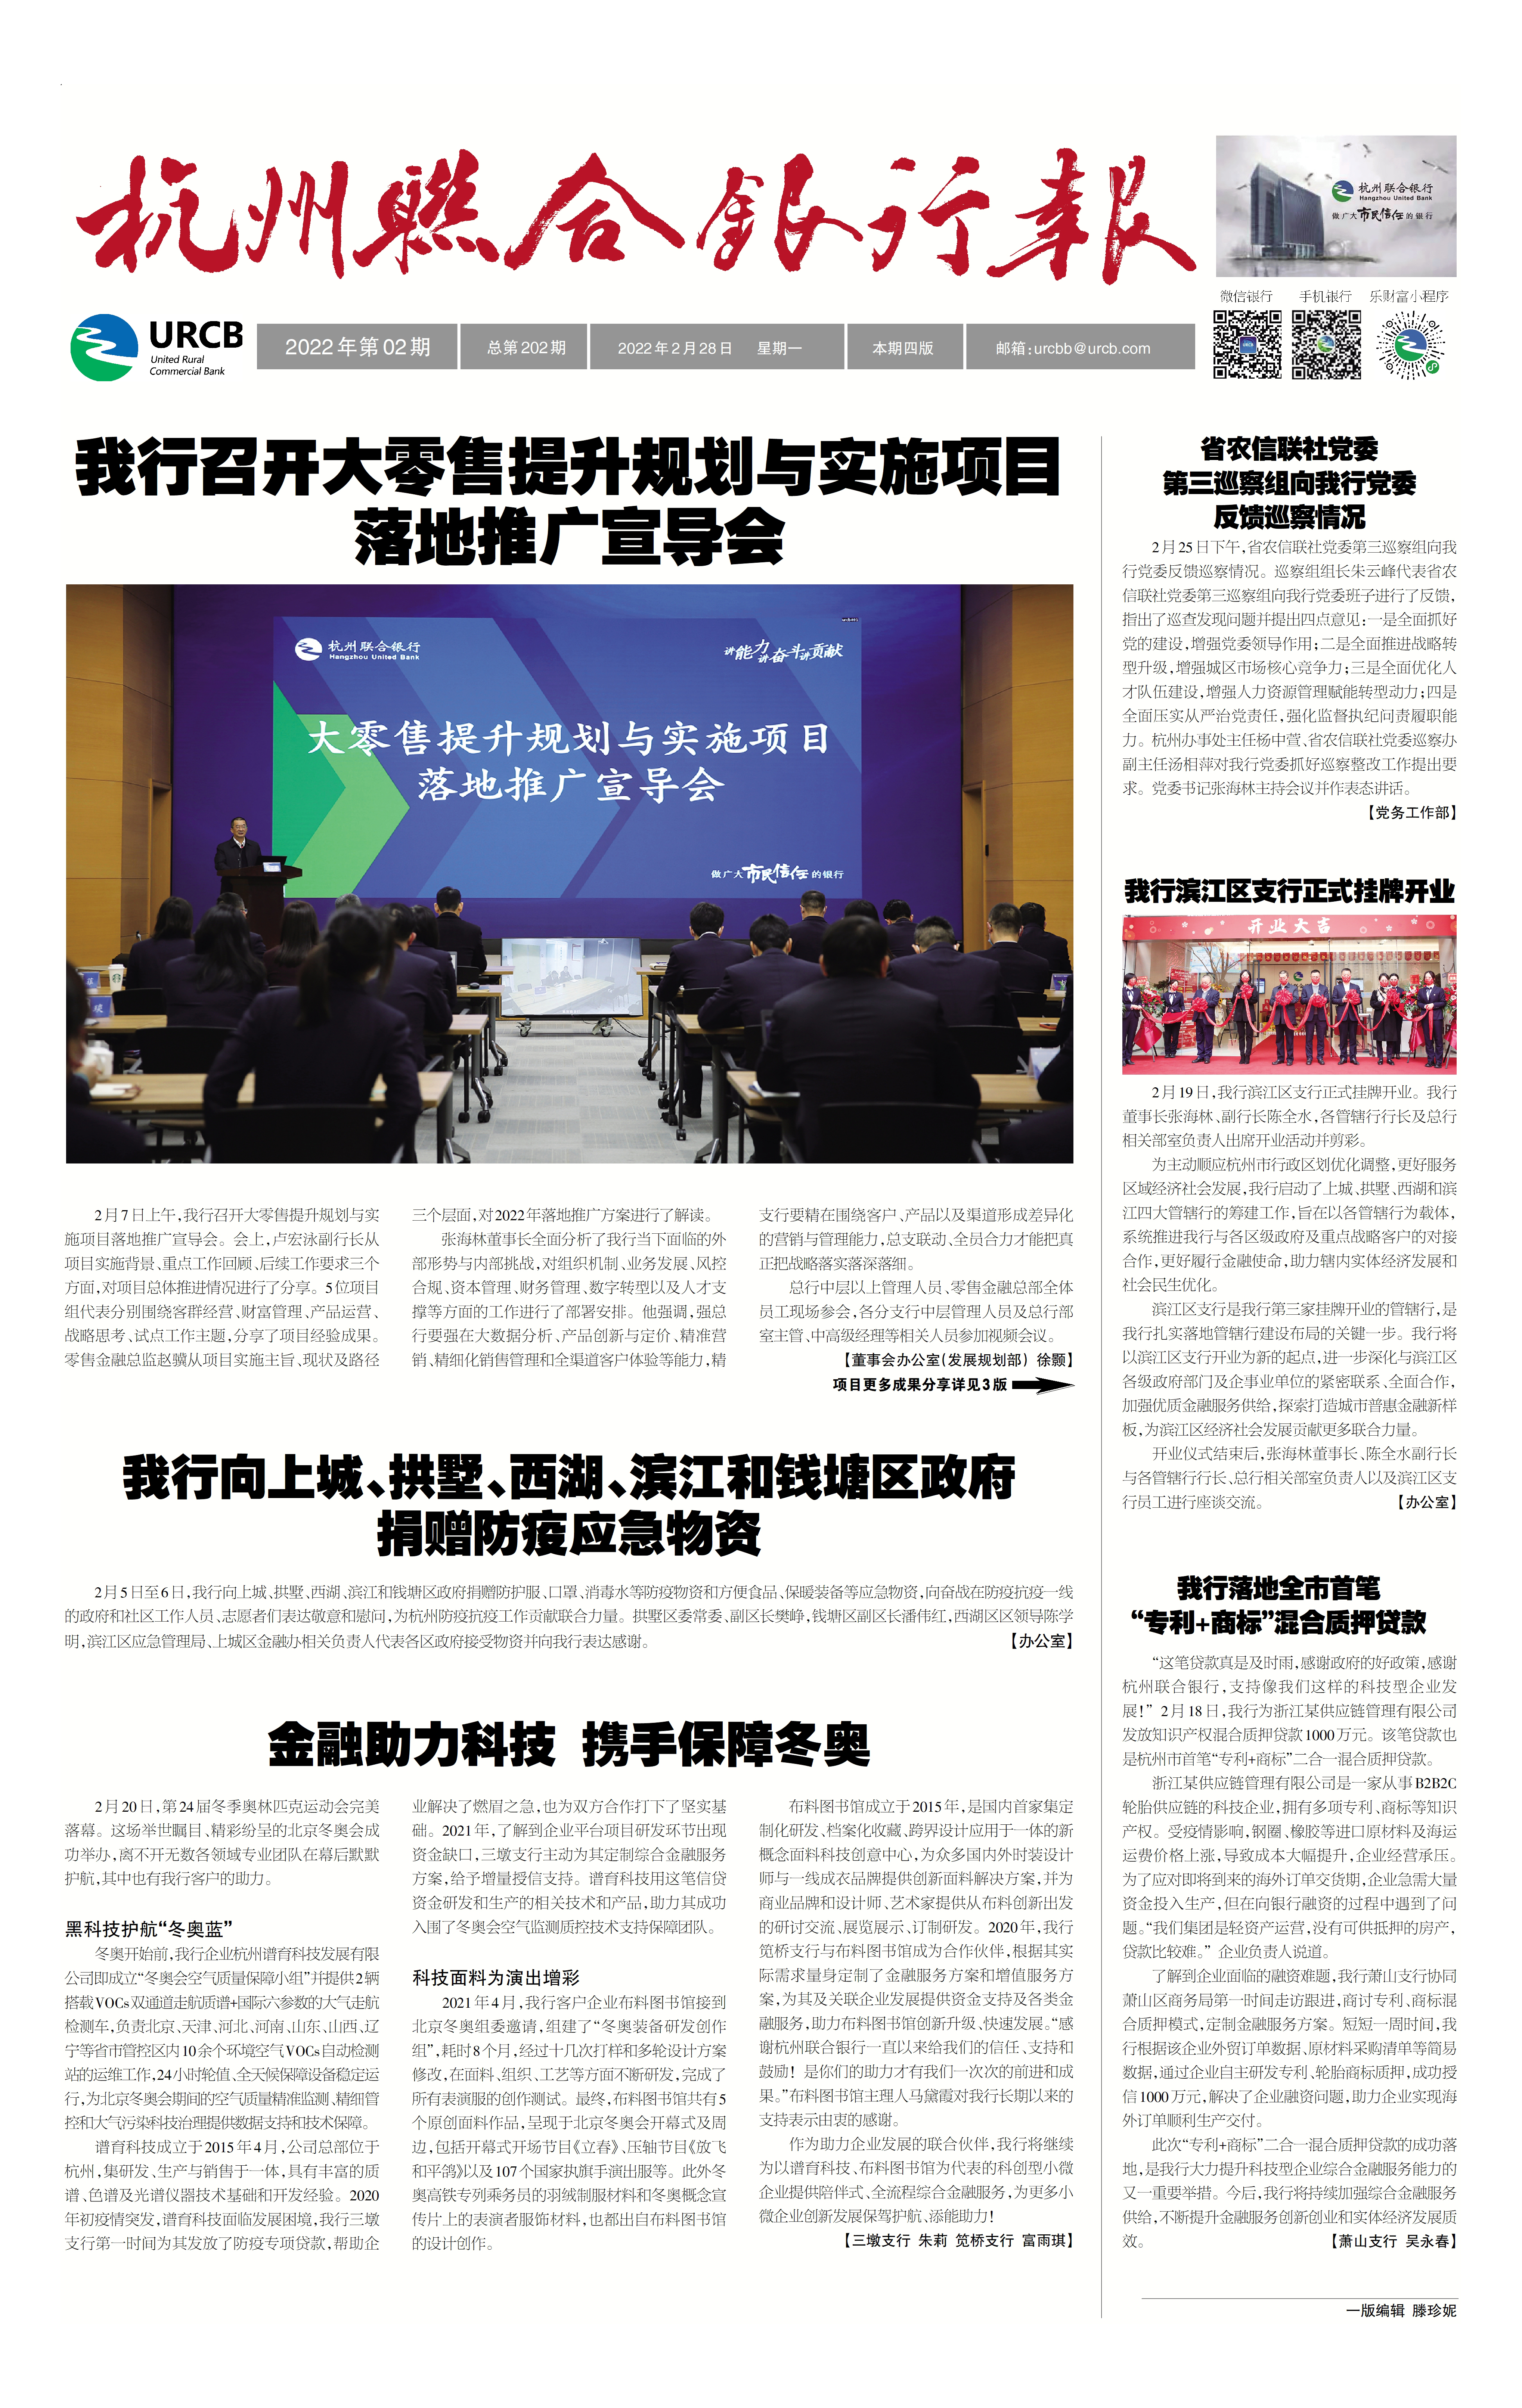 《杭州联合银行报》2022年第2期